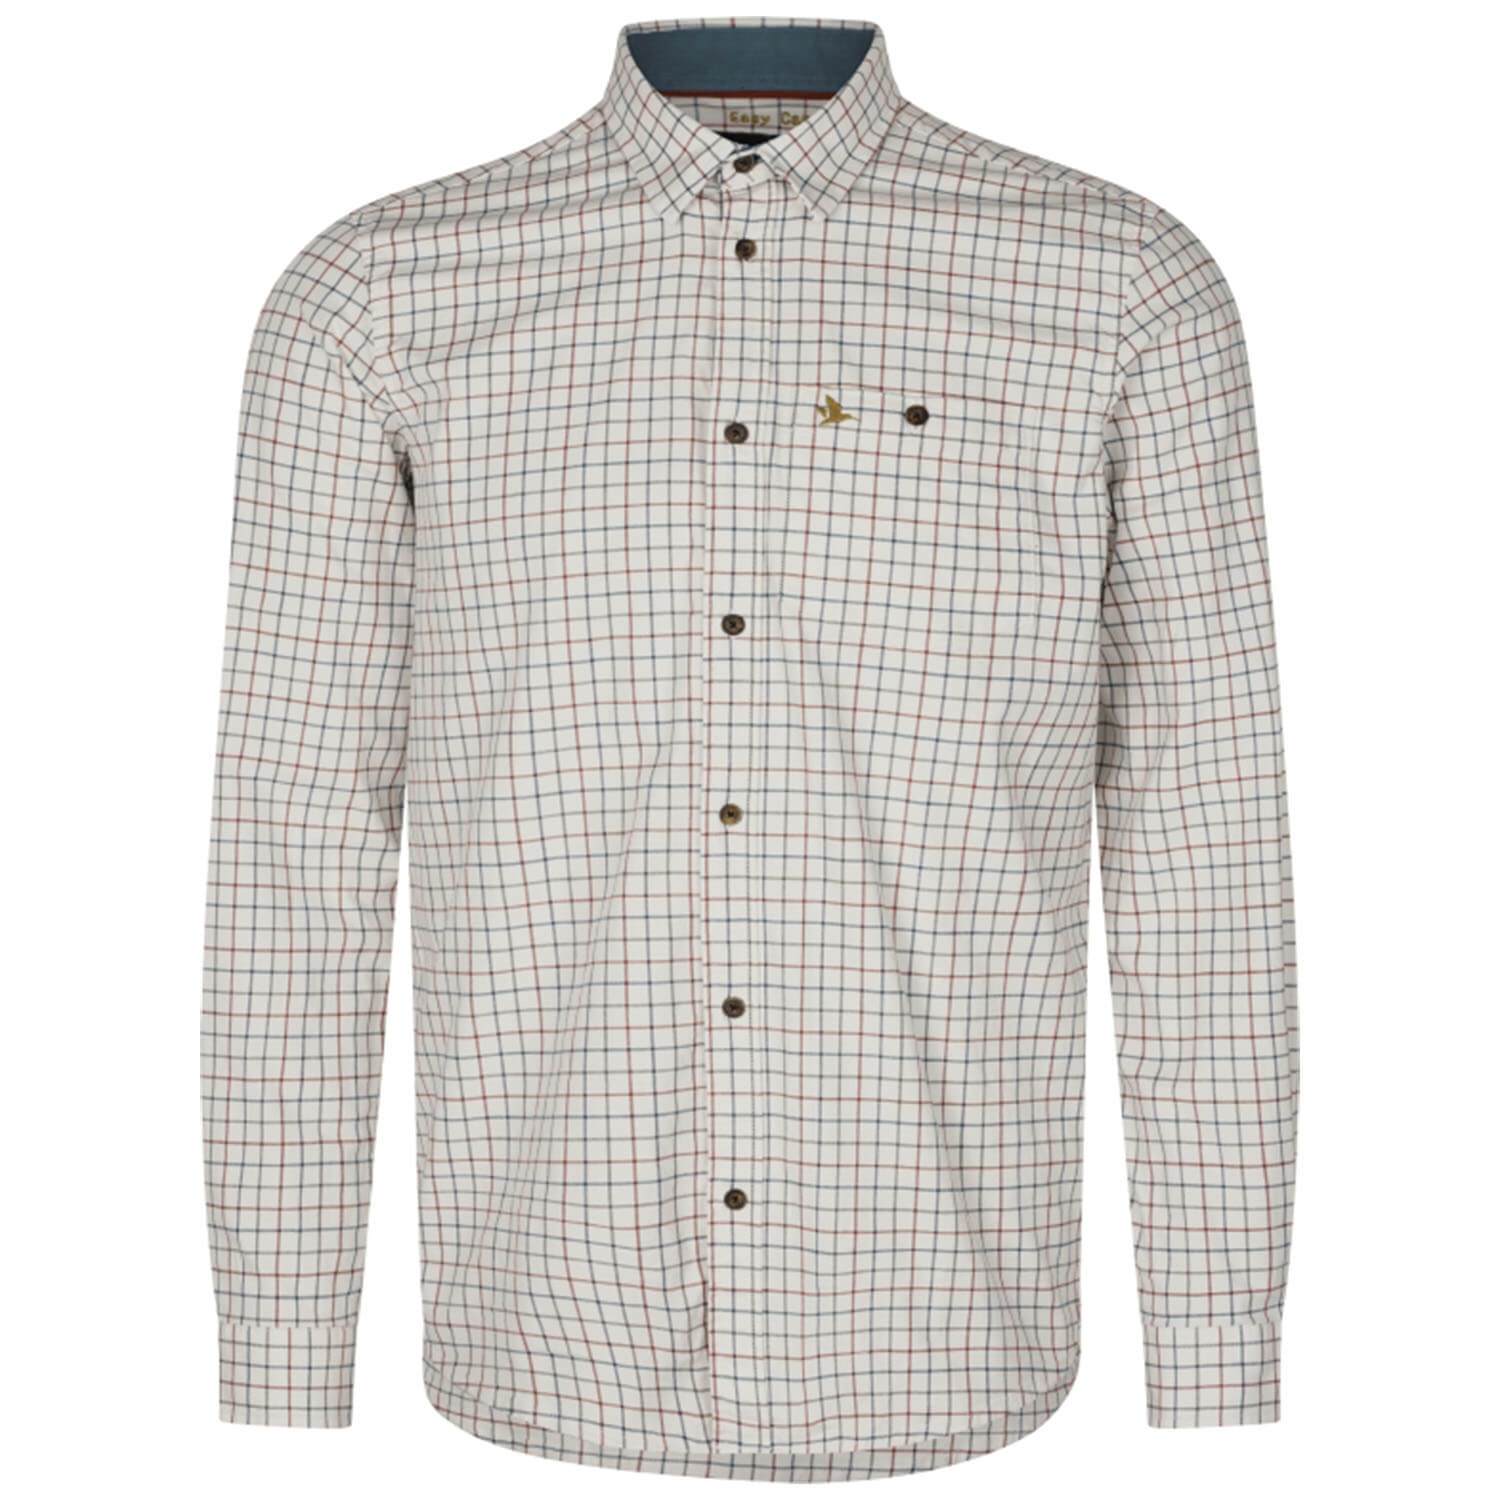  Seeland Oxford jachthemd (Grape Leaf/Terracotta Check) - Overhemden